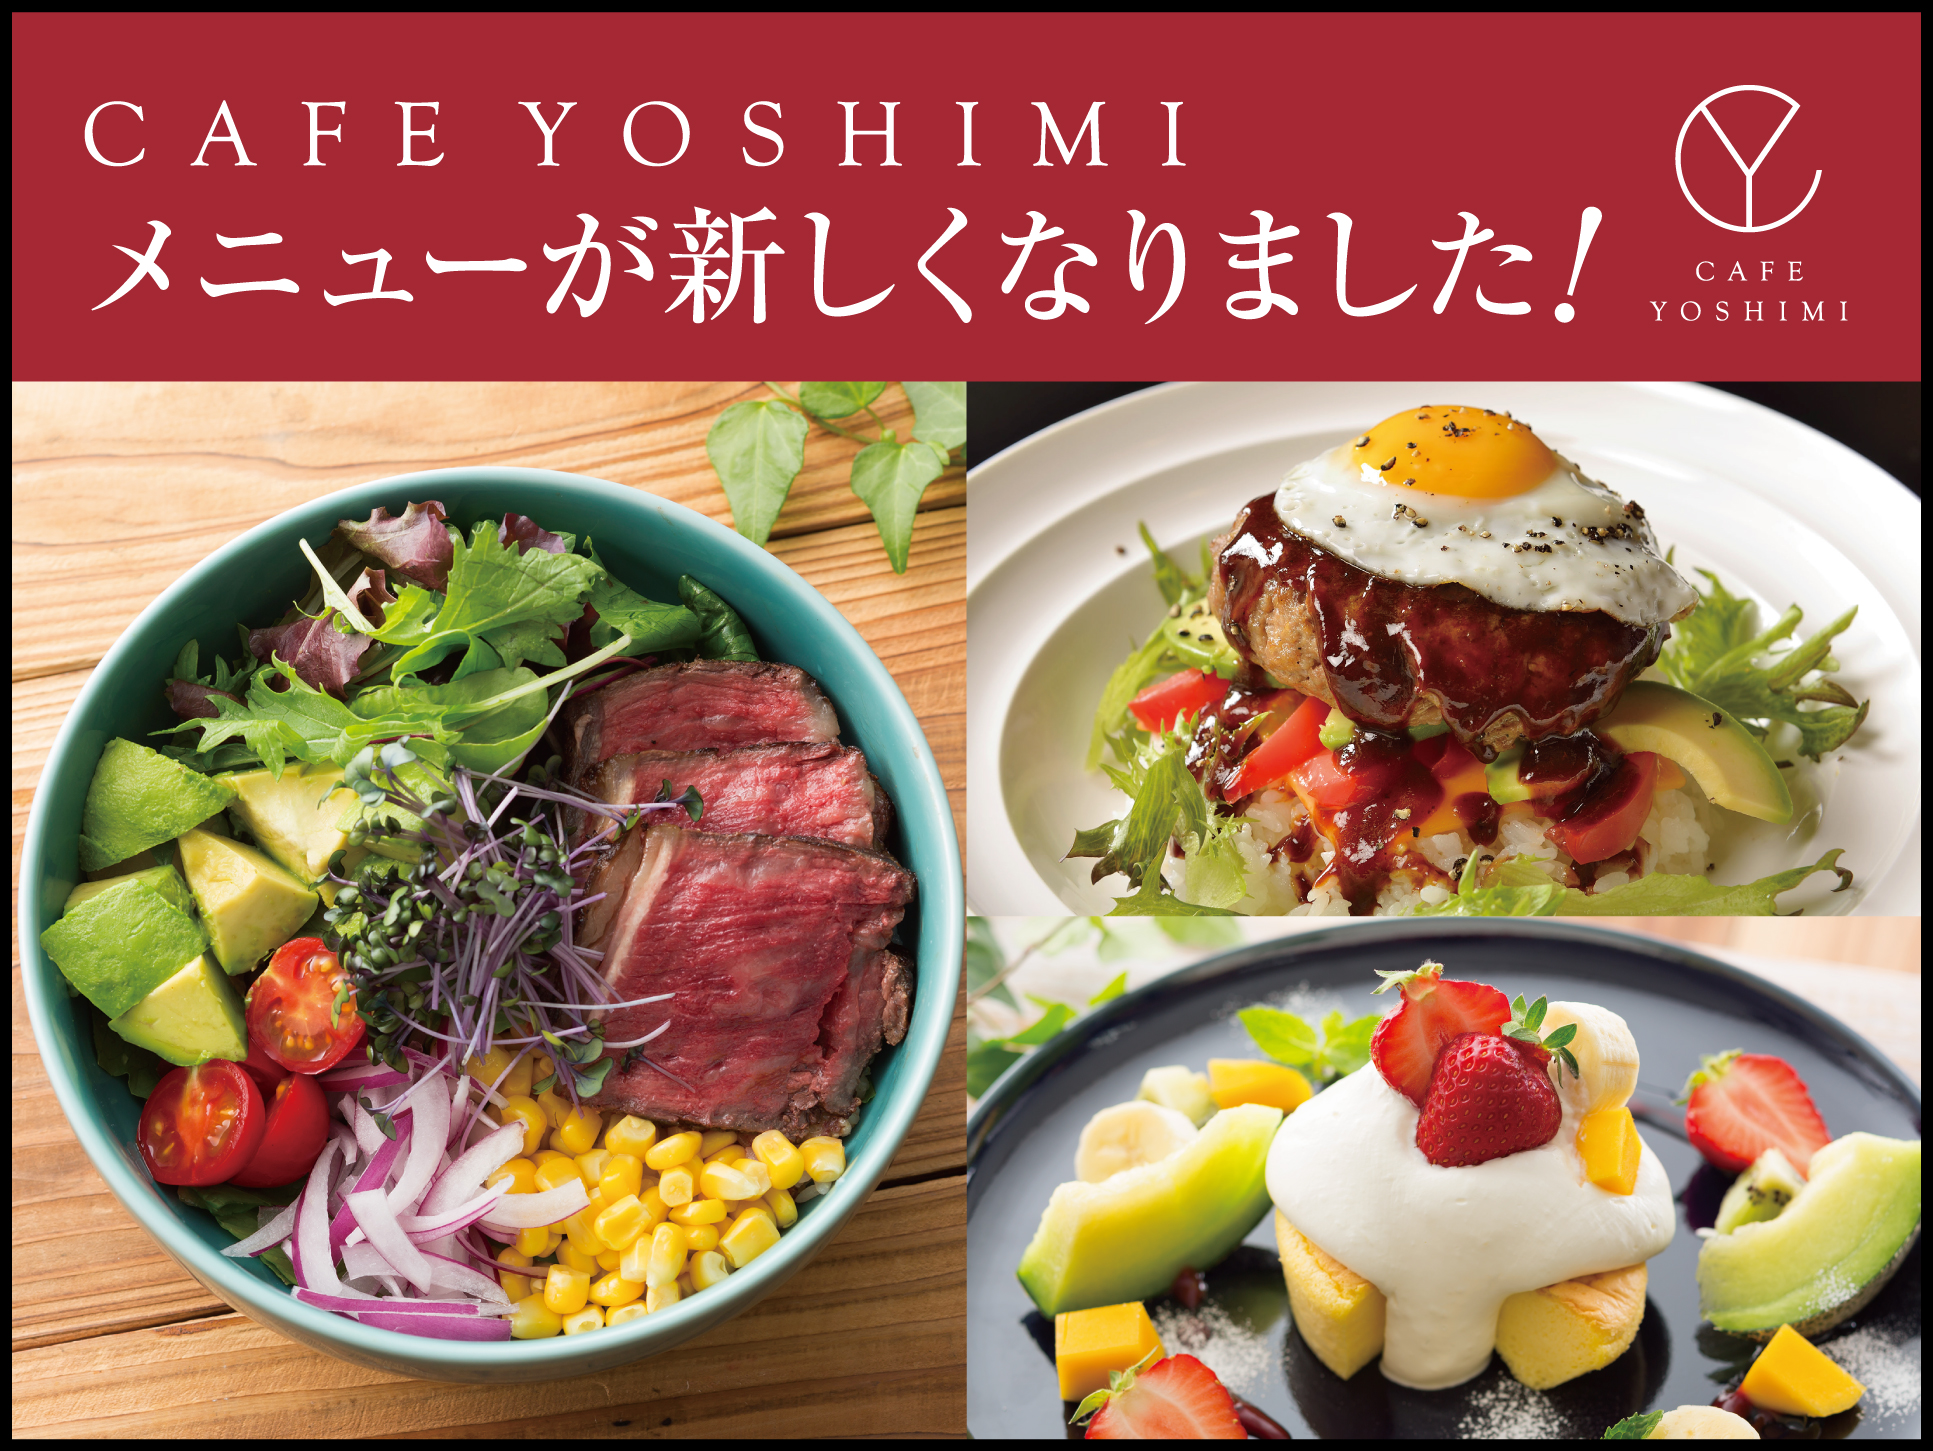 CAFE YOSHIMIのメニューが新しくなりました。